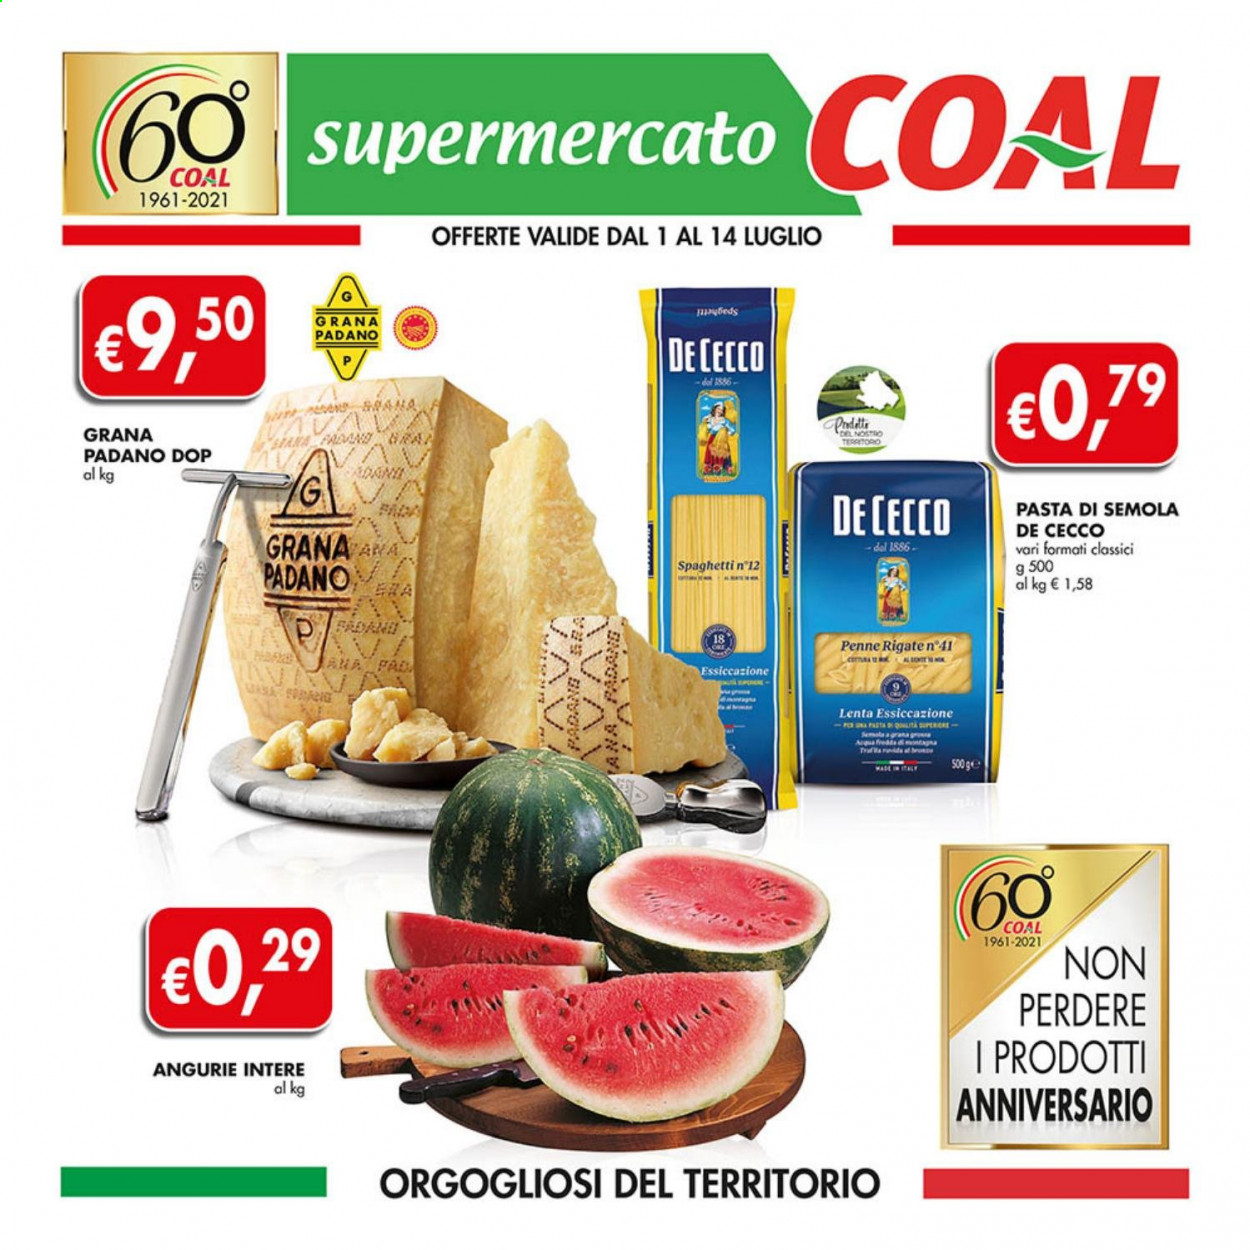 thumbnail - Volantino COAL - 1/7/2021 - 14/7/2021 - Prodotti in offerta - formaggio, Grana Padano, De Cecco, spaghetti, pasta, penne. Pagina 1.